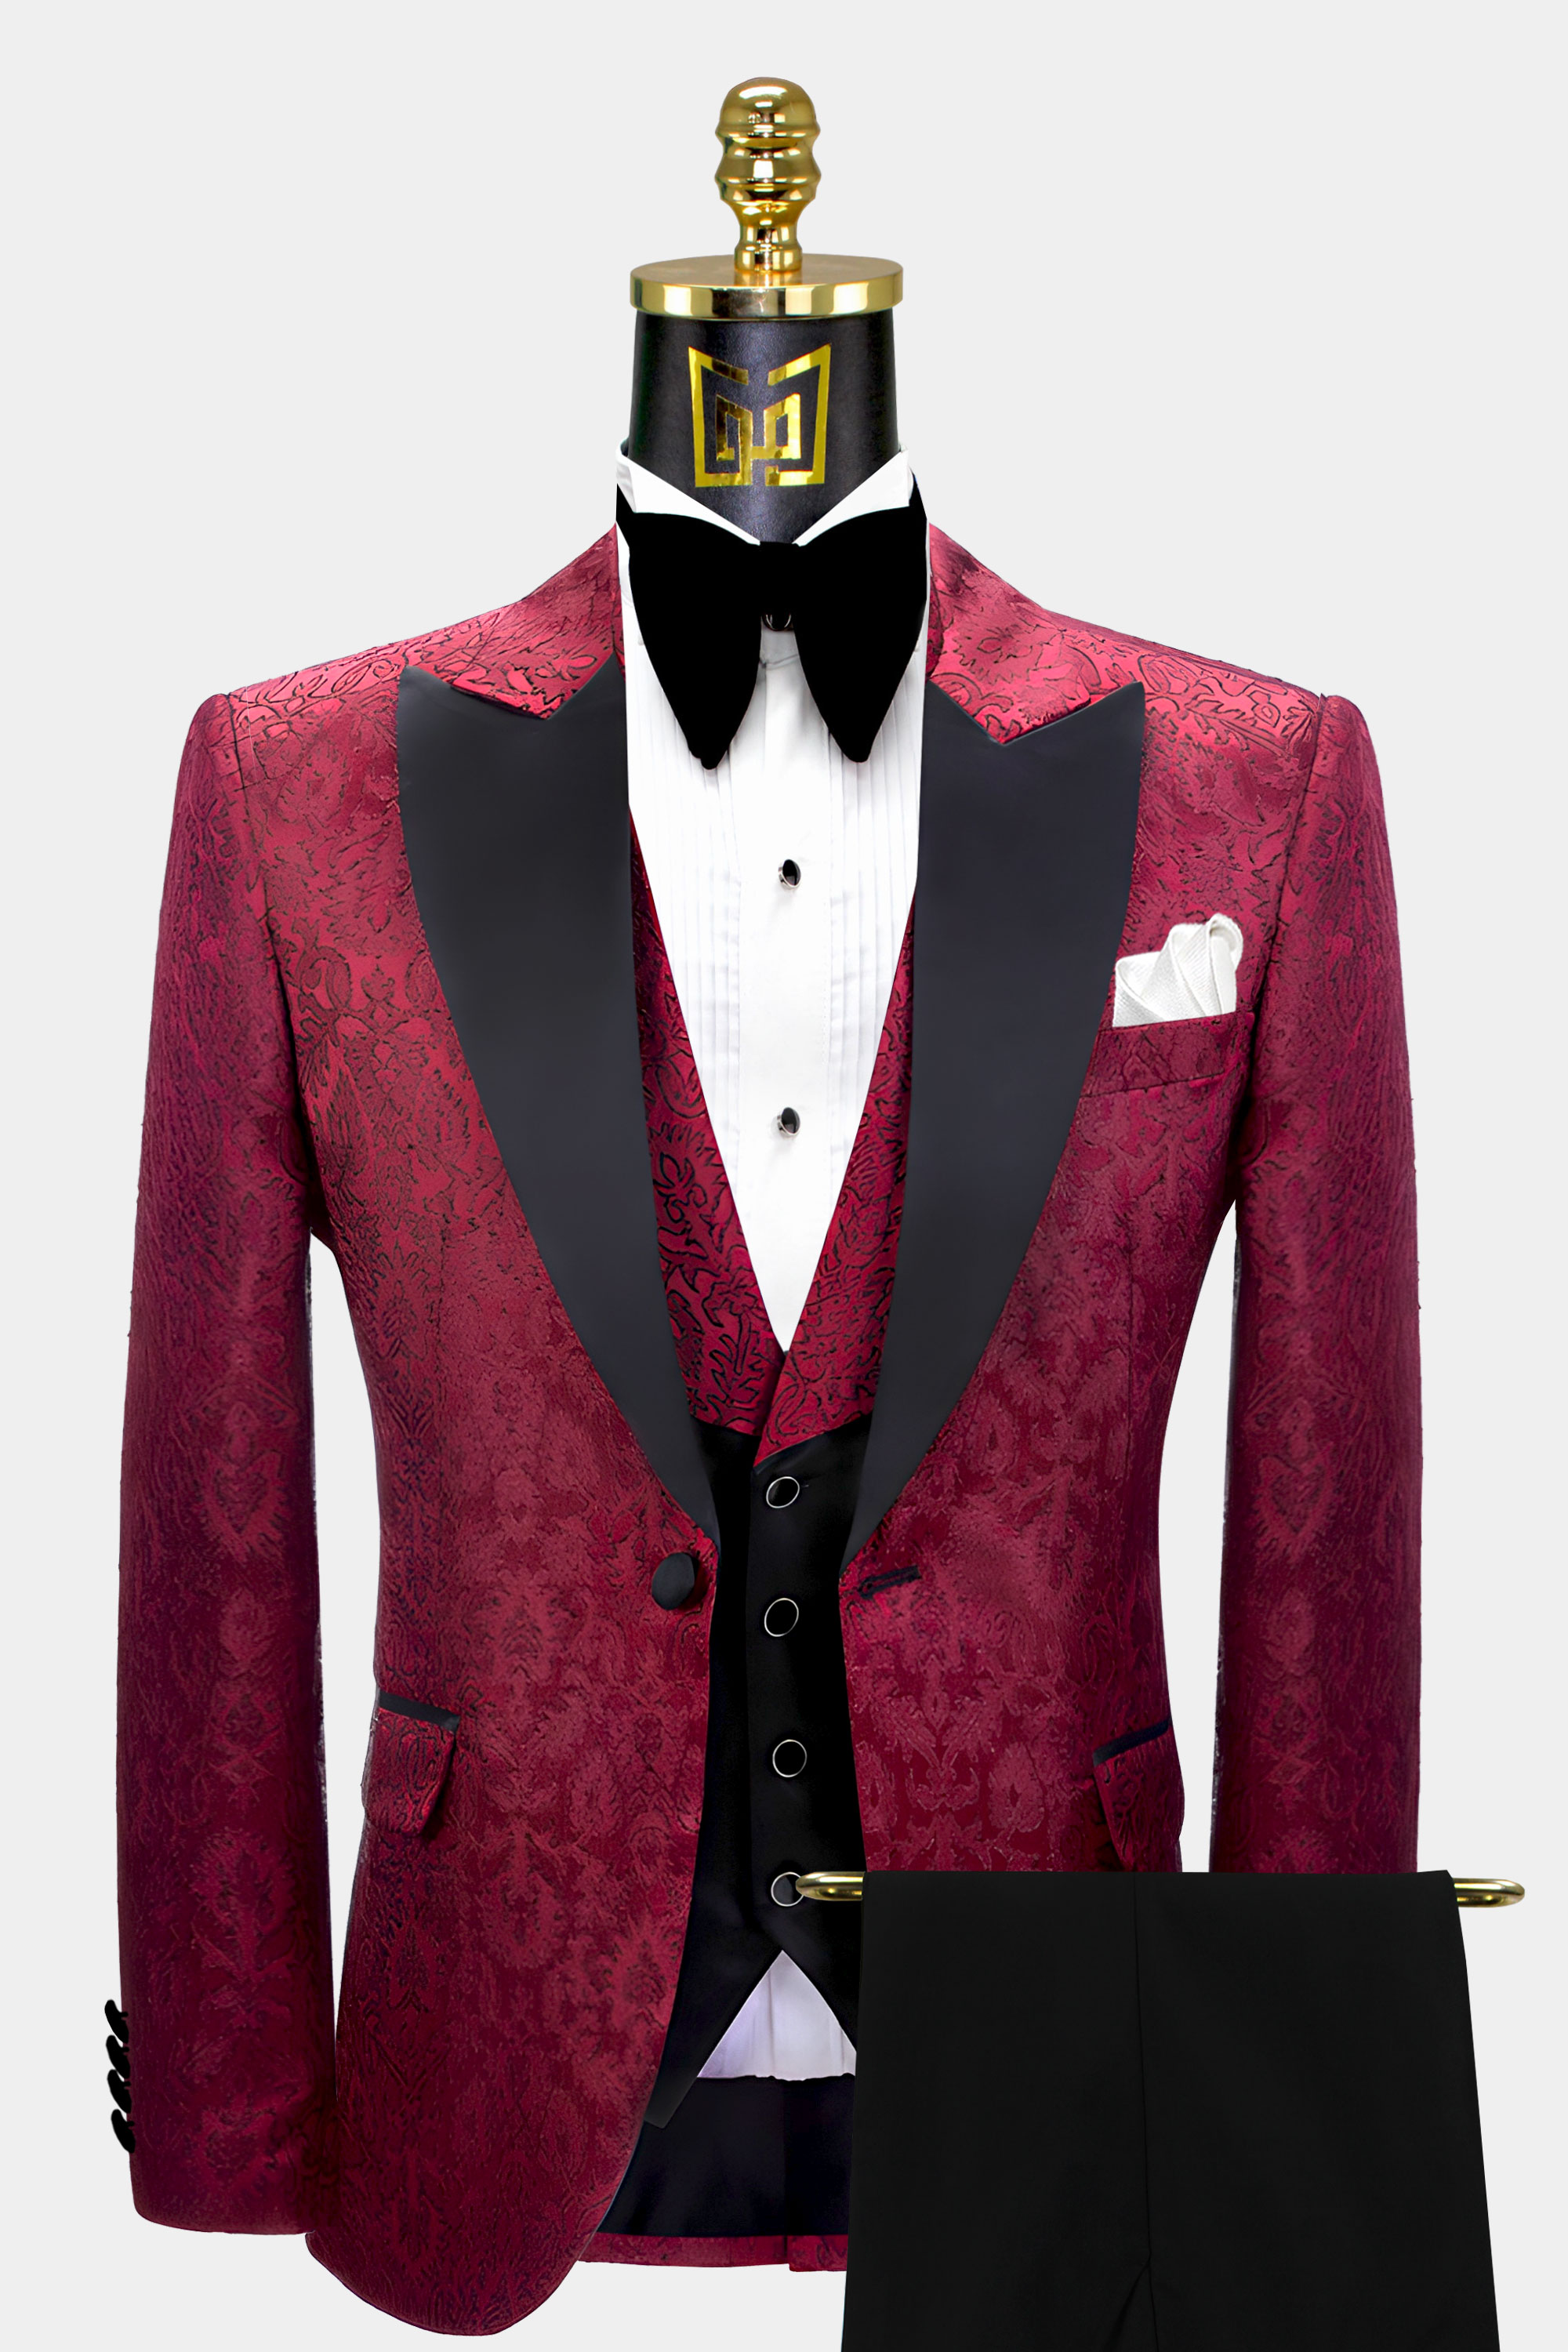 Black-and-Dark-Maroon-Tuxedo-Groom-Wedding-Suit-For-Men-from-Gentlemansguru.Com.